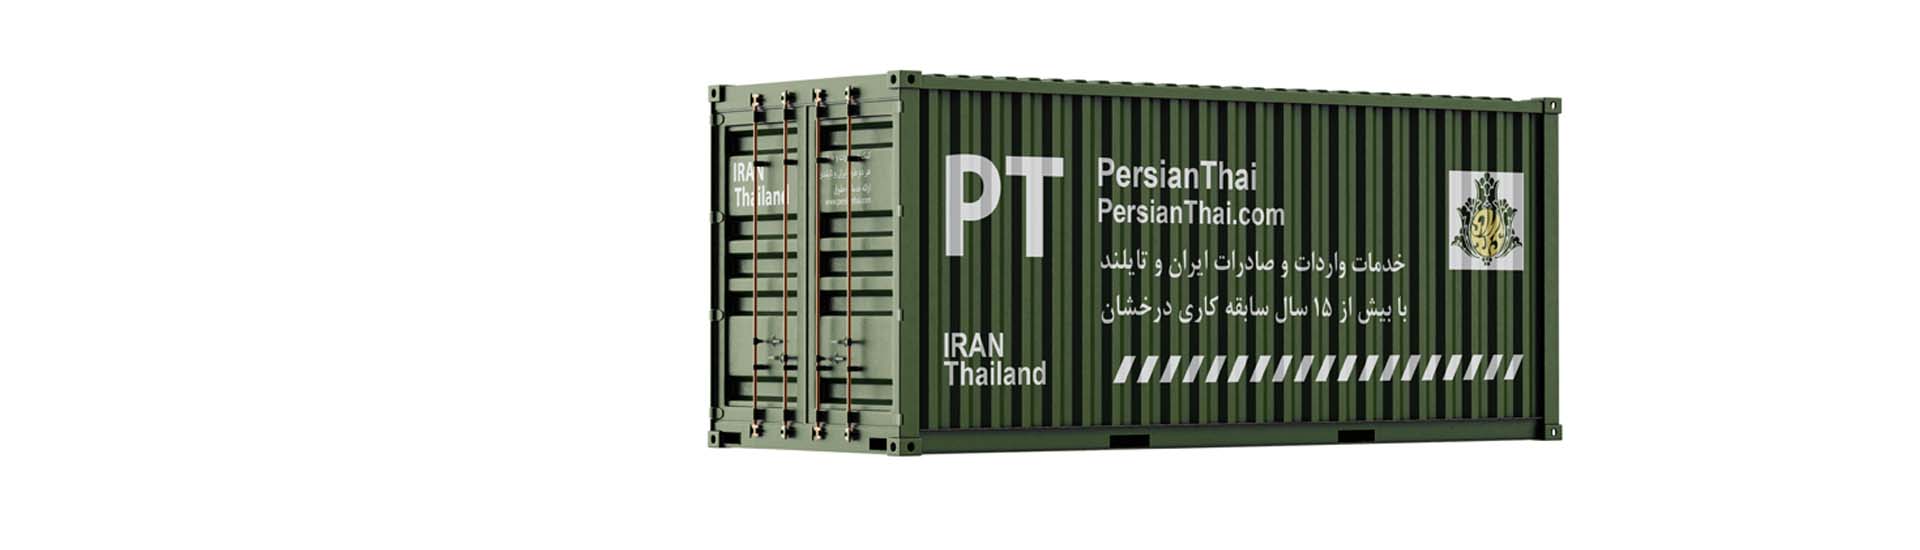 Persianthai.com